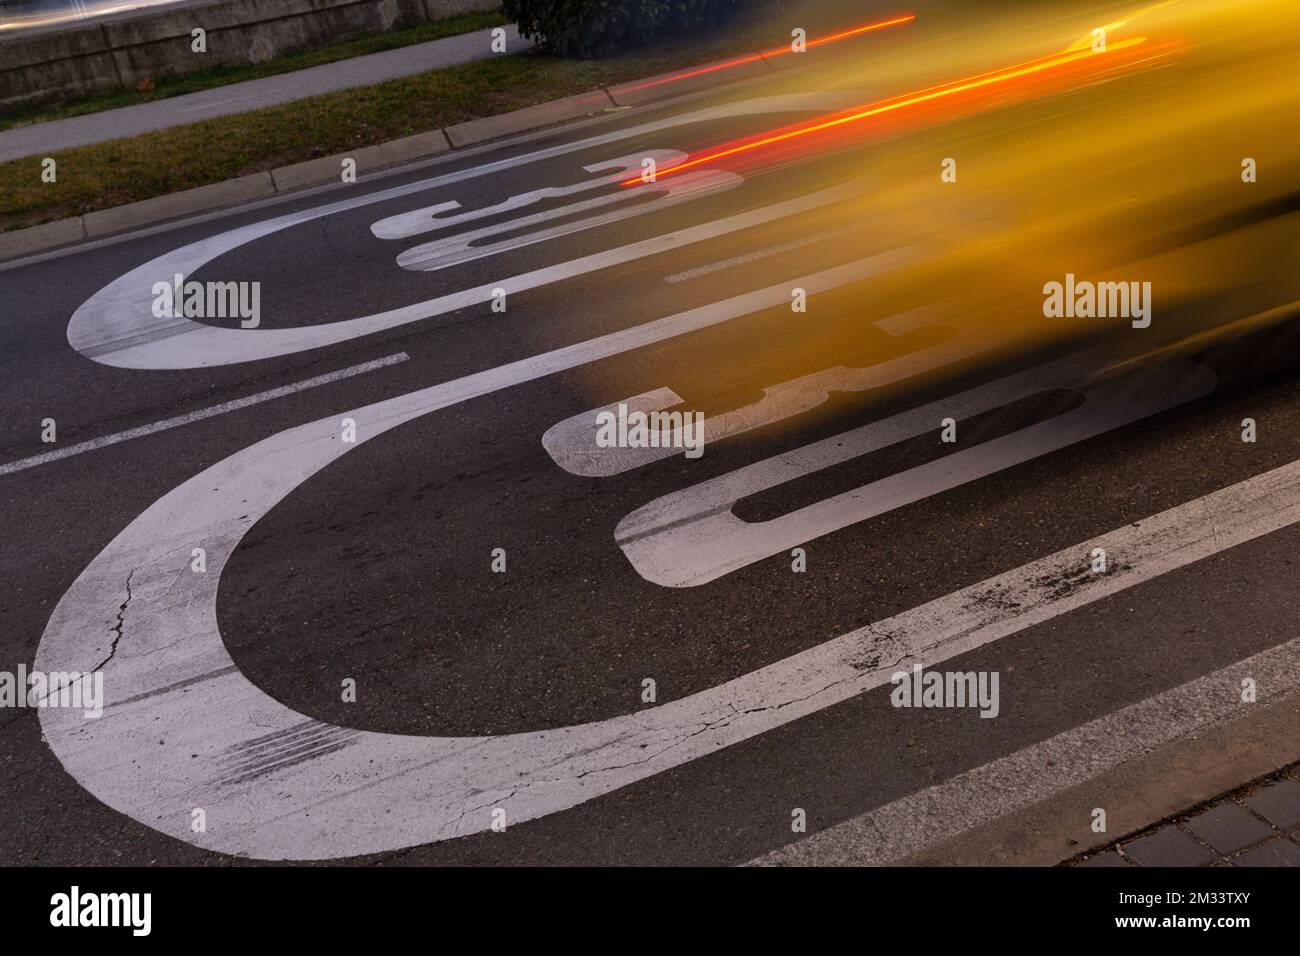 Segnale di accelerazione del veicolo sul limite di velocità. Immagine in movimento, raffica di luce, sveglia dell'auto. Foto Stock